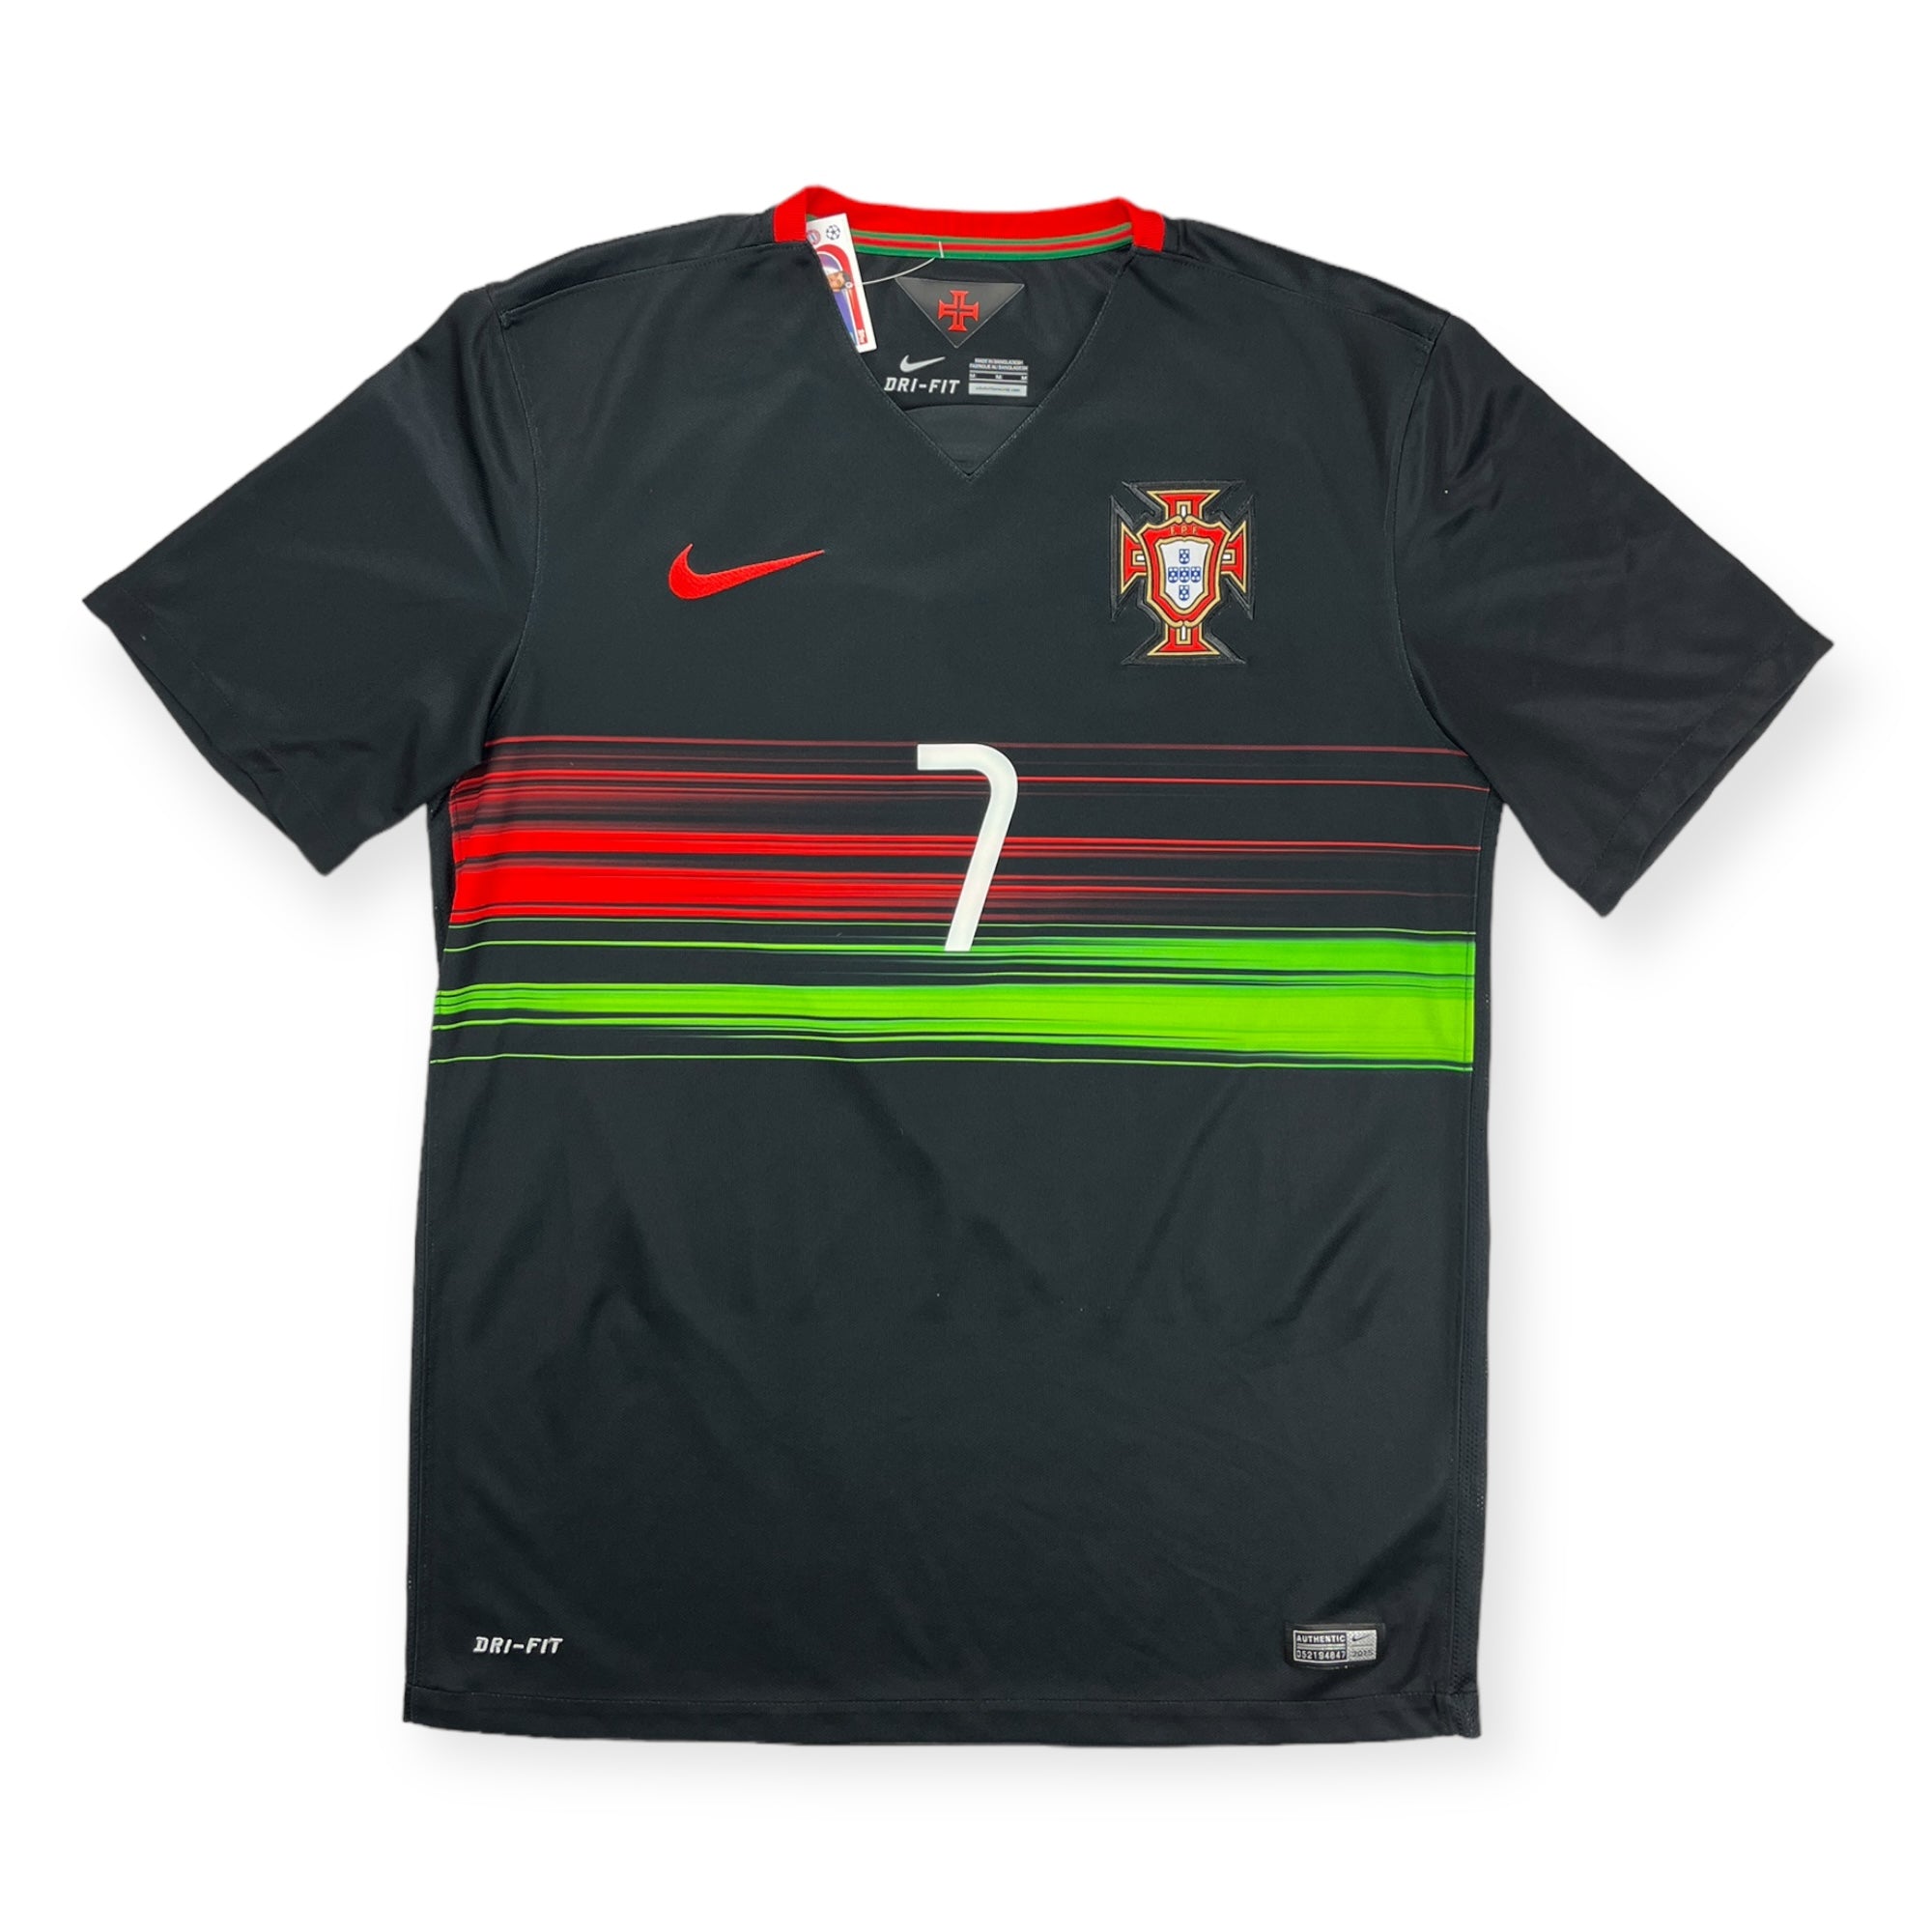 Portugal 2015 Away Shirt, Ronaldo 7